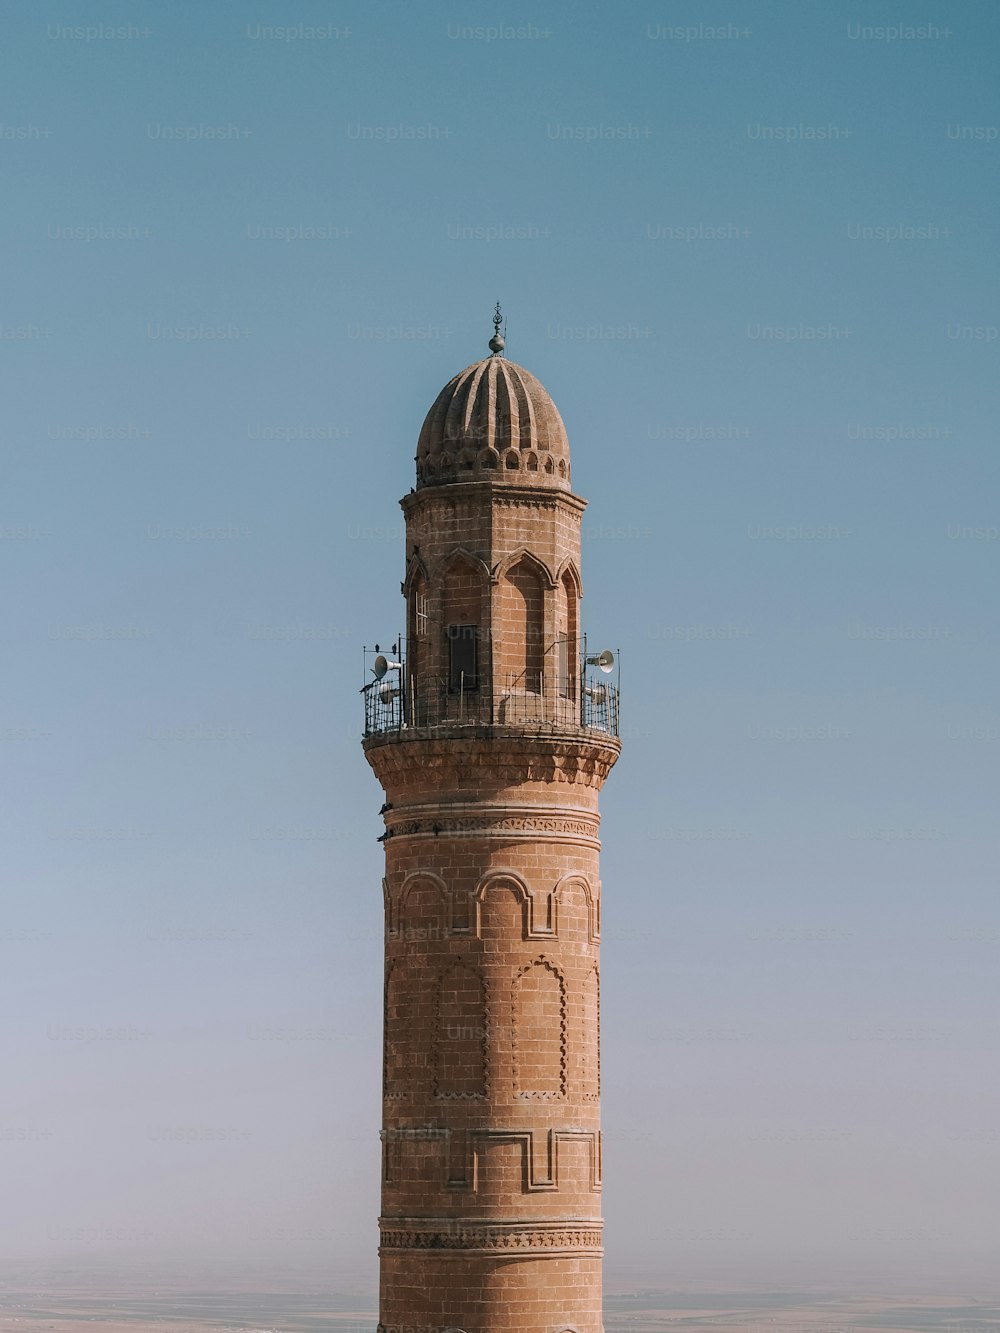 uma torre alta com um relógio em cima dela